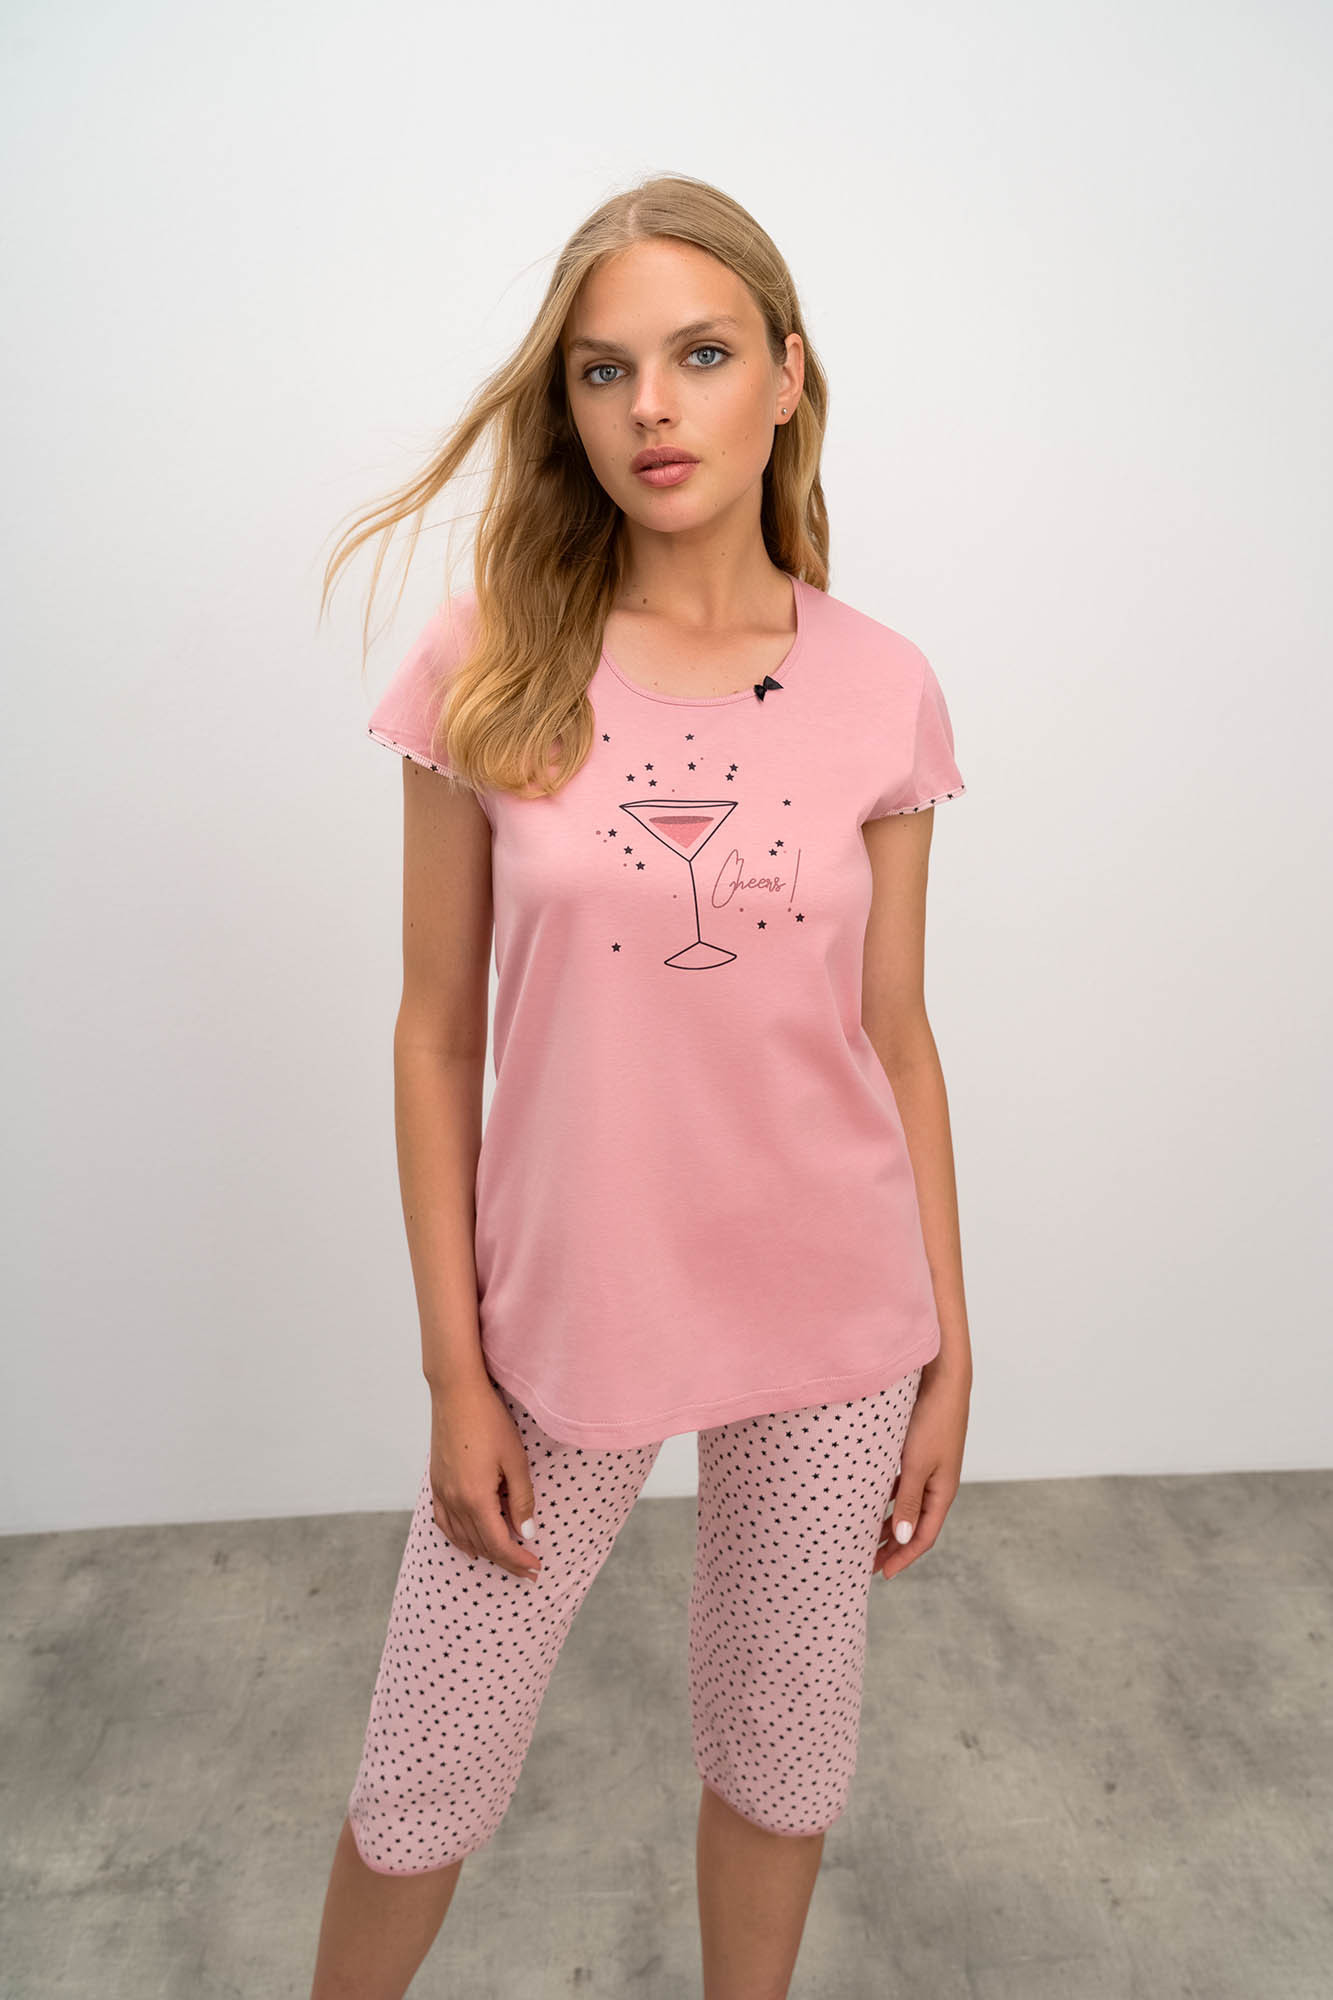 Vamp - Dvoudílné dámské pyžamo 16295 - Vamp Barva: pink gray, Velikost: M